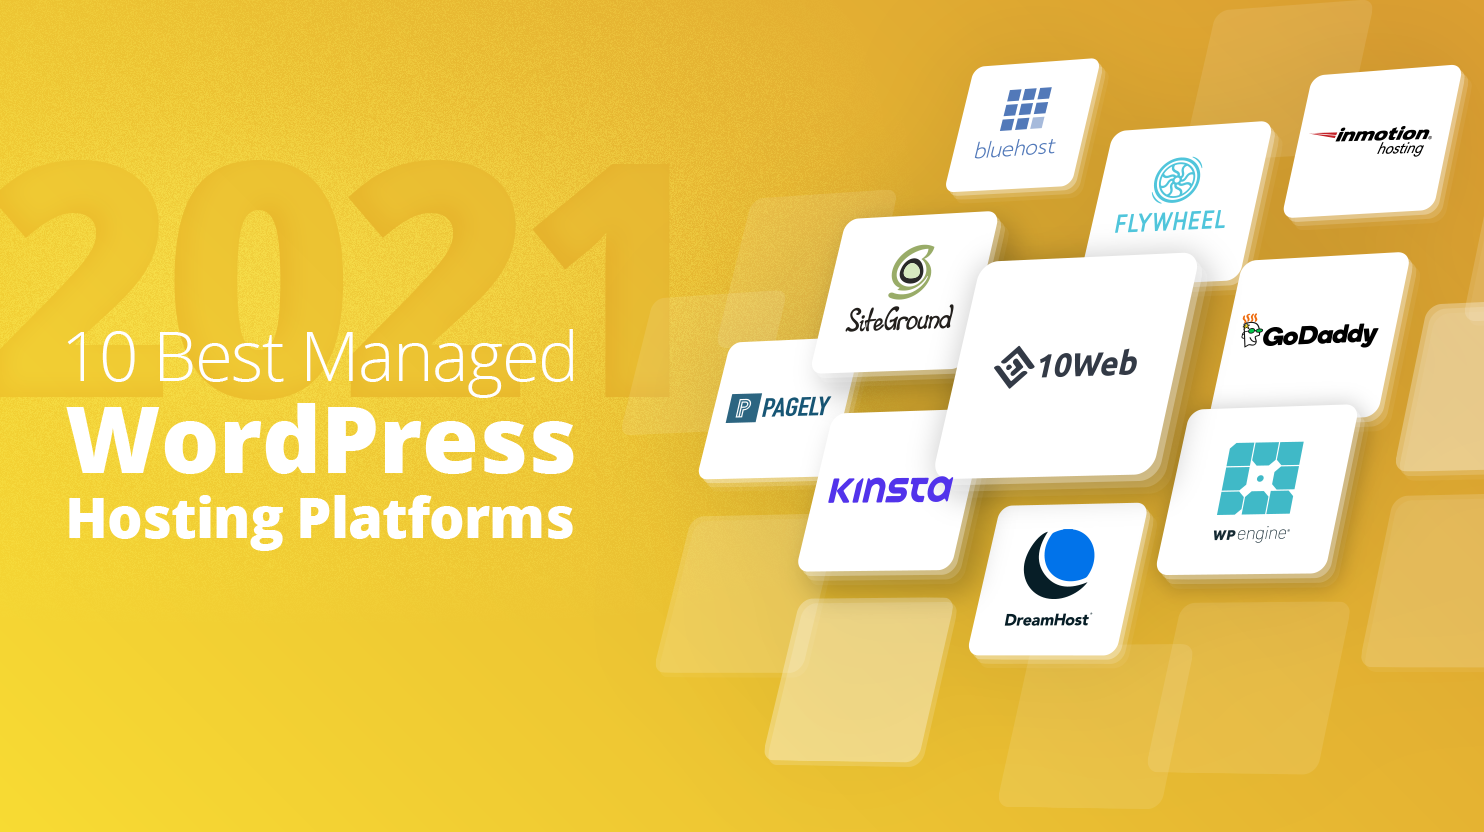 Managed Hosting Platforms Compared 2021